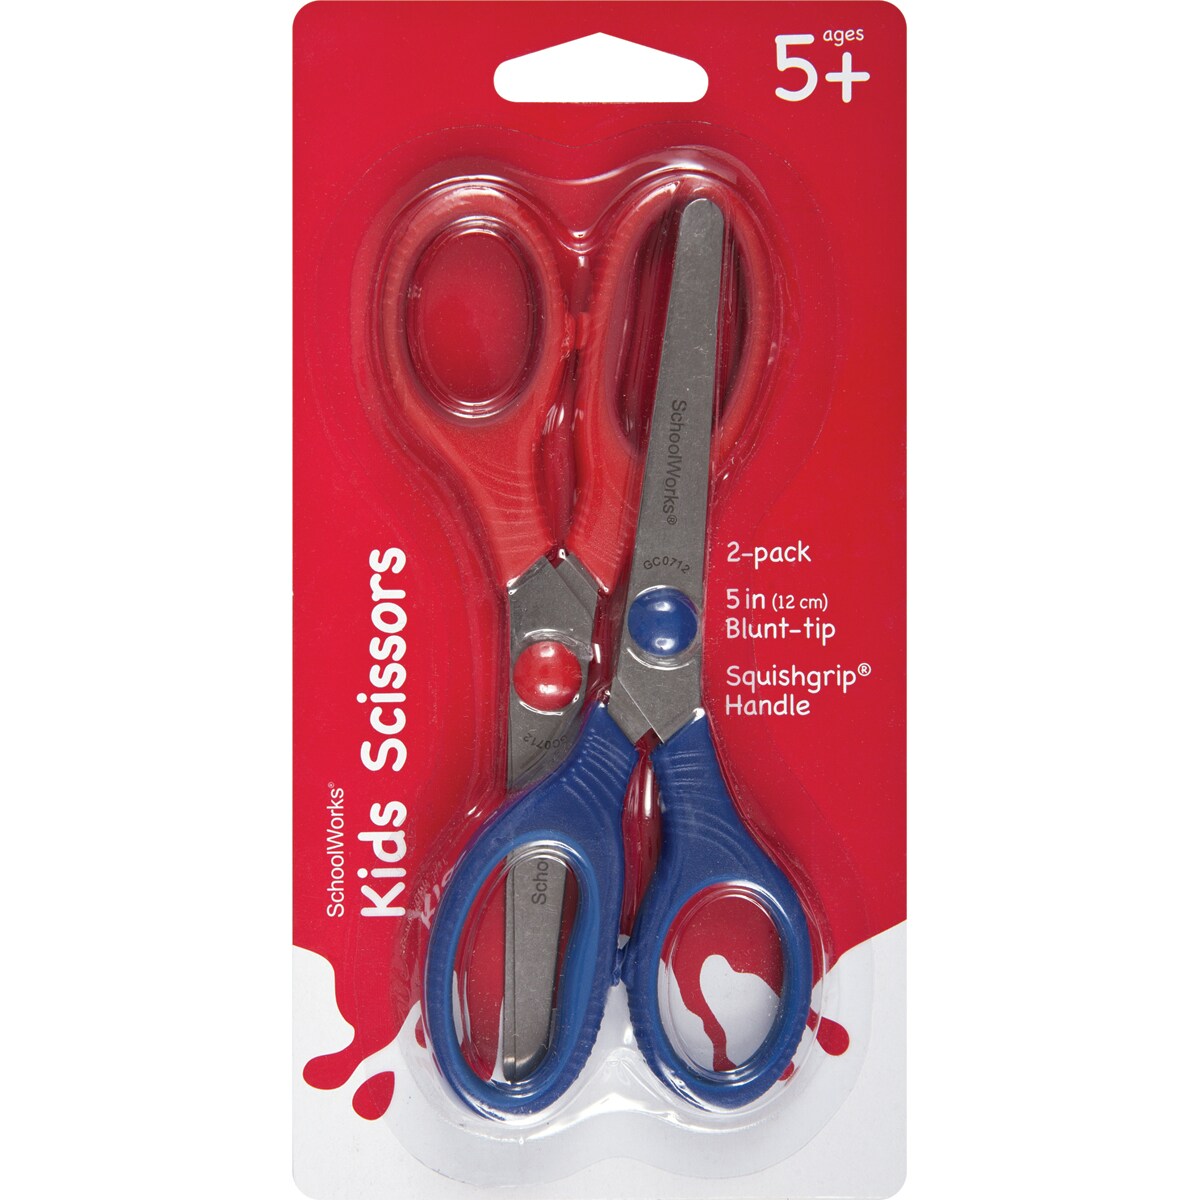 Fiskars, FSK1055801004, Schoolworks 5 Kids Scissors, 2 / Pack